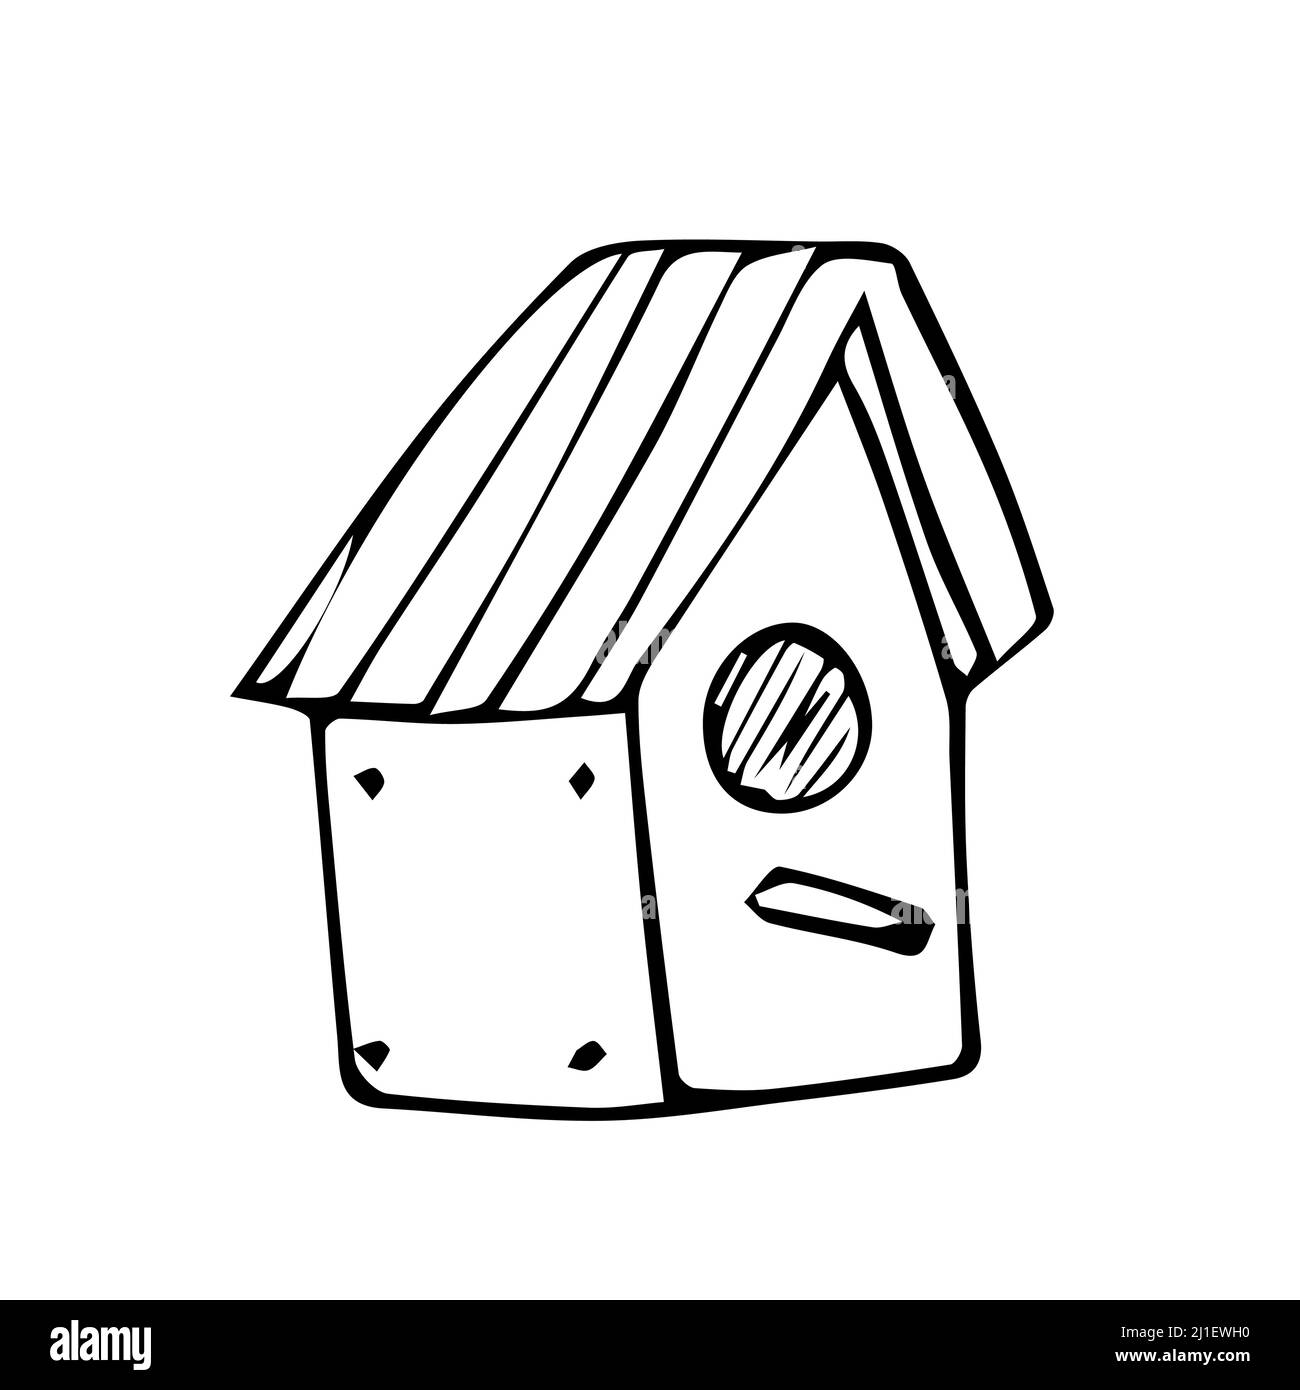 Vogelhaus handgezeichnete Vektor-Doodle-Illustration. Cartoon Birdhouse. Isoliert auf weißem Hintergrund. Frühjahrssaison. Handgezeichnetes einfaches Element Stock Vektor